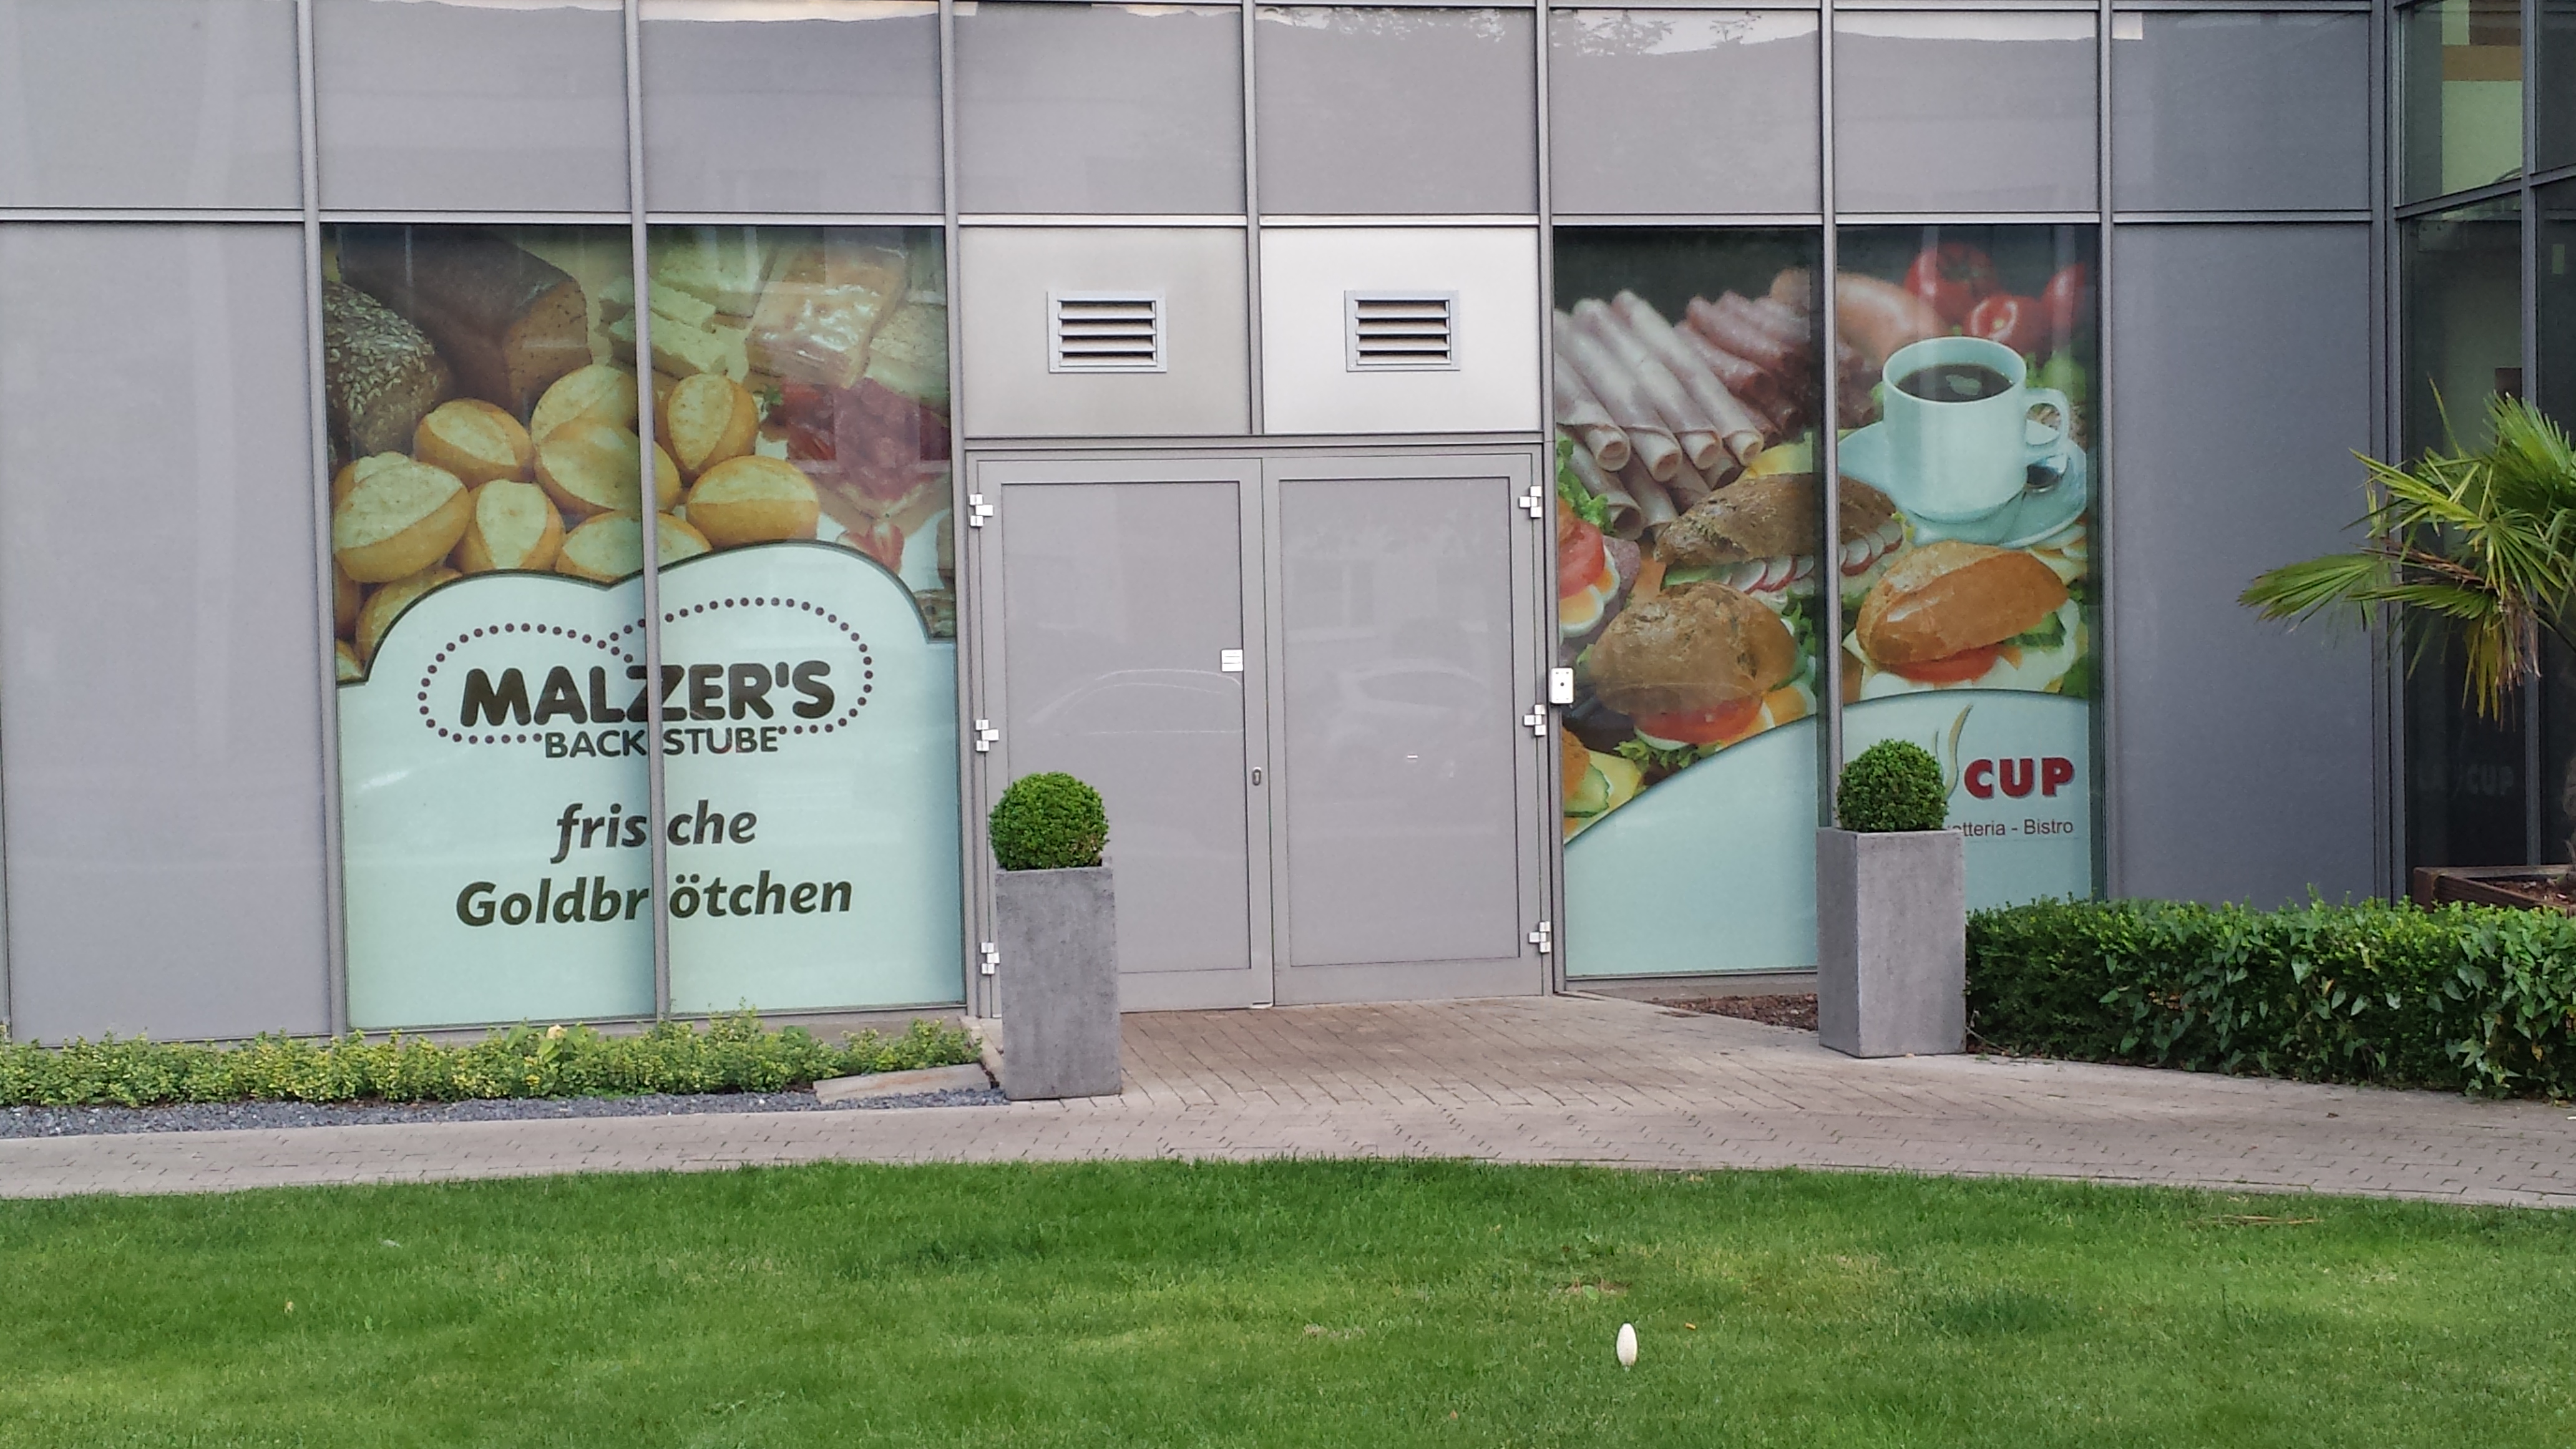 Bild 4 Malzer's Backstube GmbH & Co. KG in Duisburg